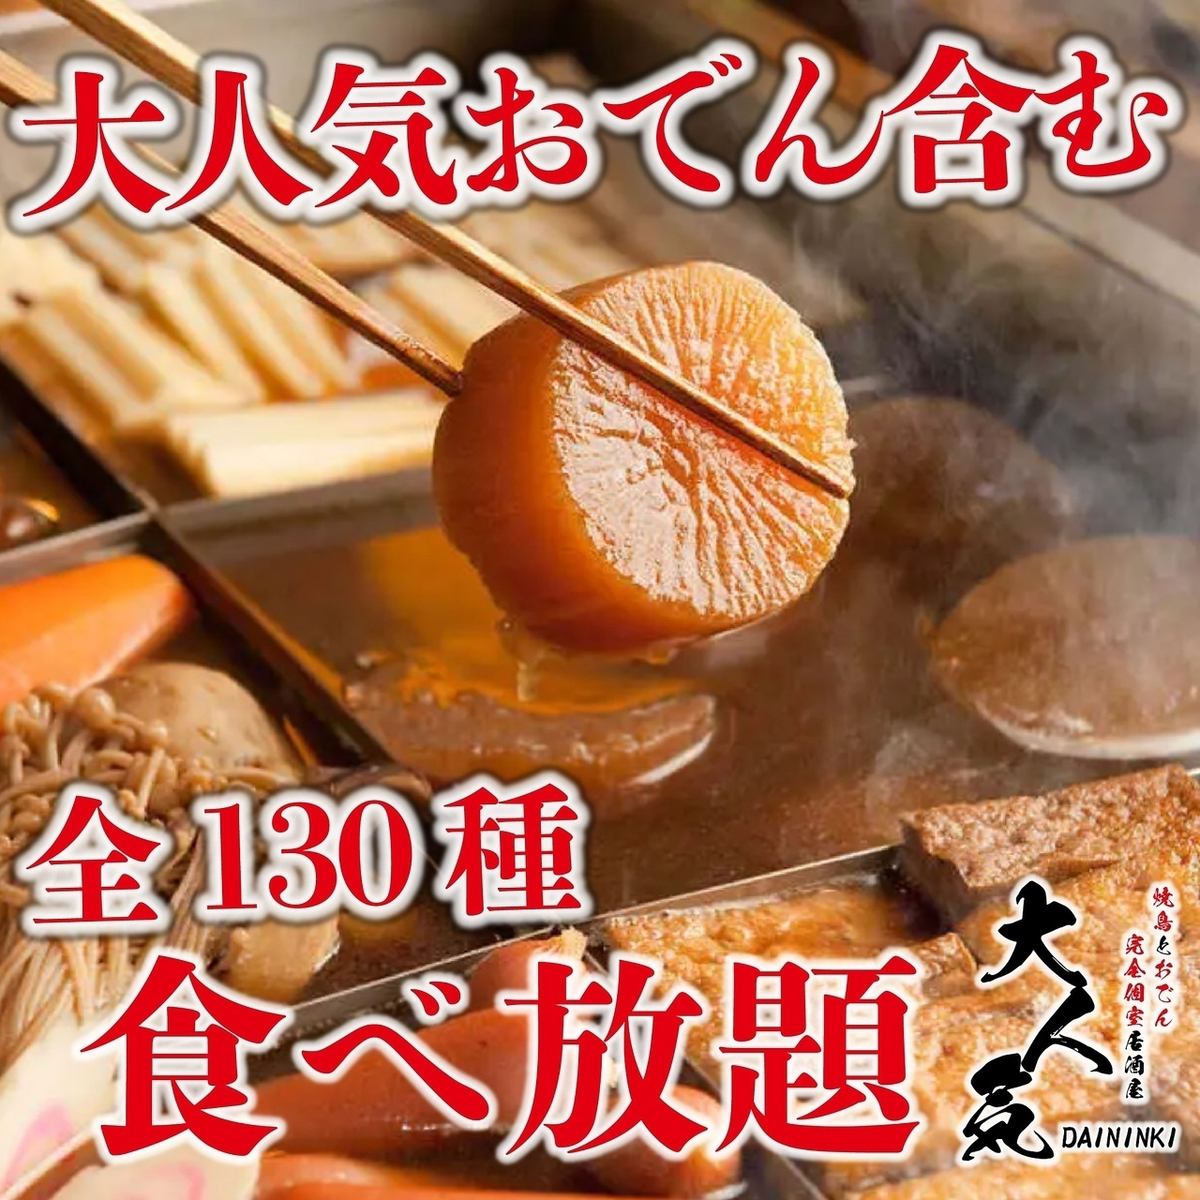 「內臟火鍋等20道菜的無限暢飲套餐」3小時無限暢飲3,280日元